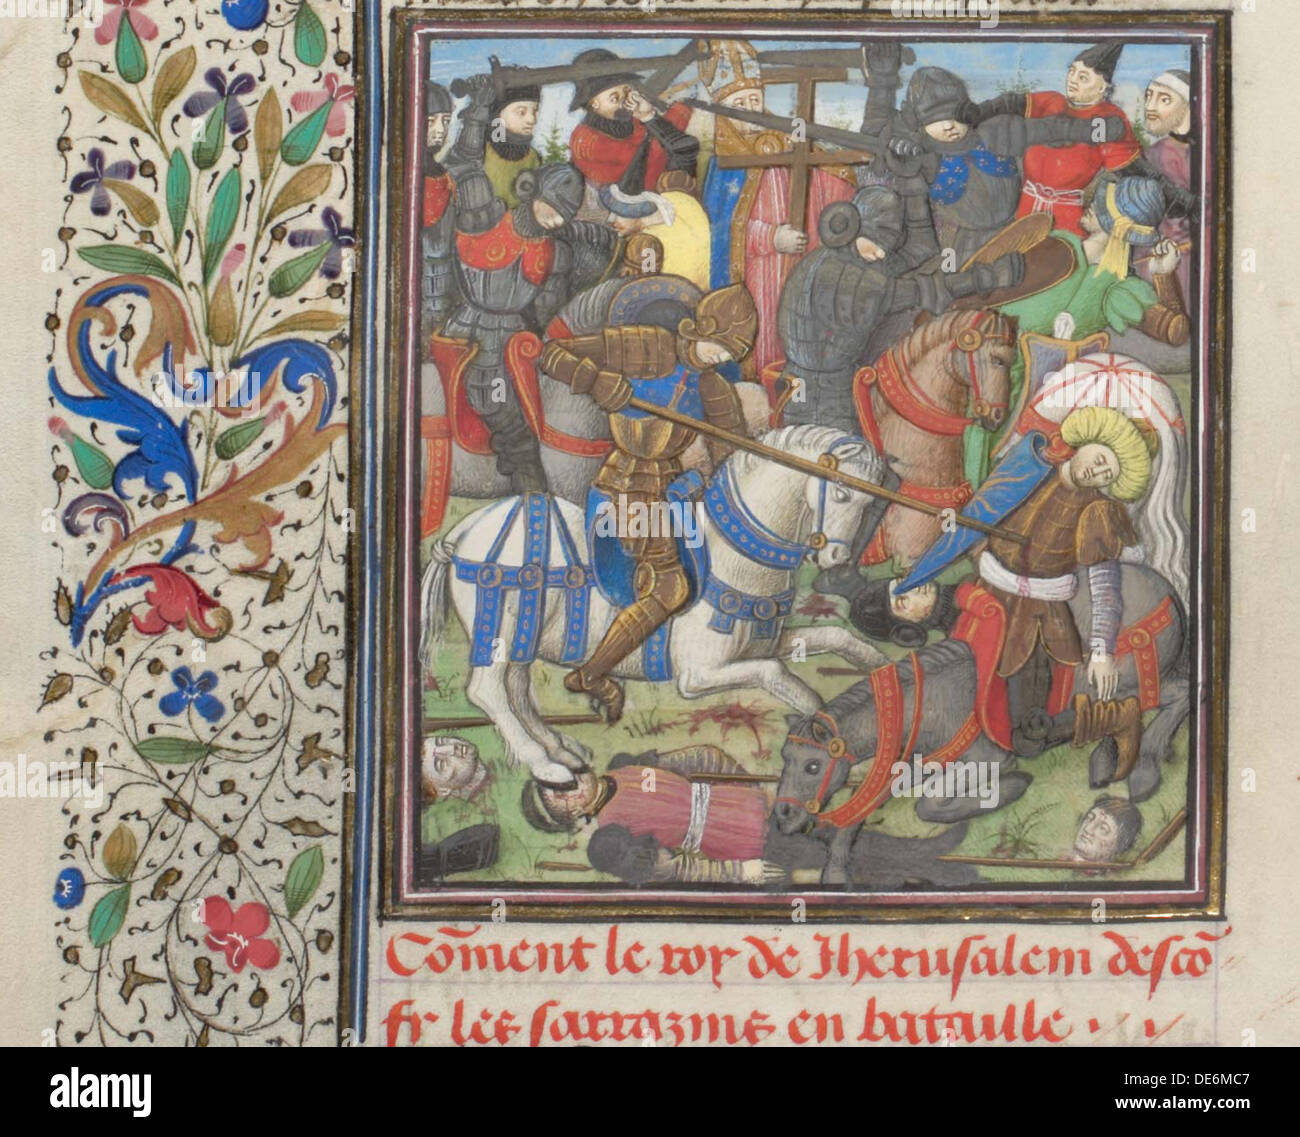 La battaglia tra i crociati e saraceni. Miniatura di Historia da Guglielmo di pneumatico, 1460s. Artista: Anonimo Foto Stock